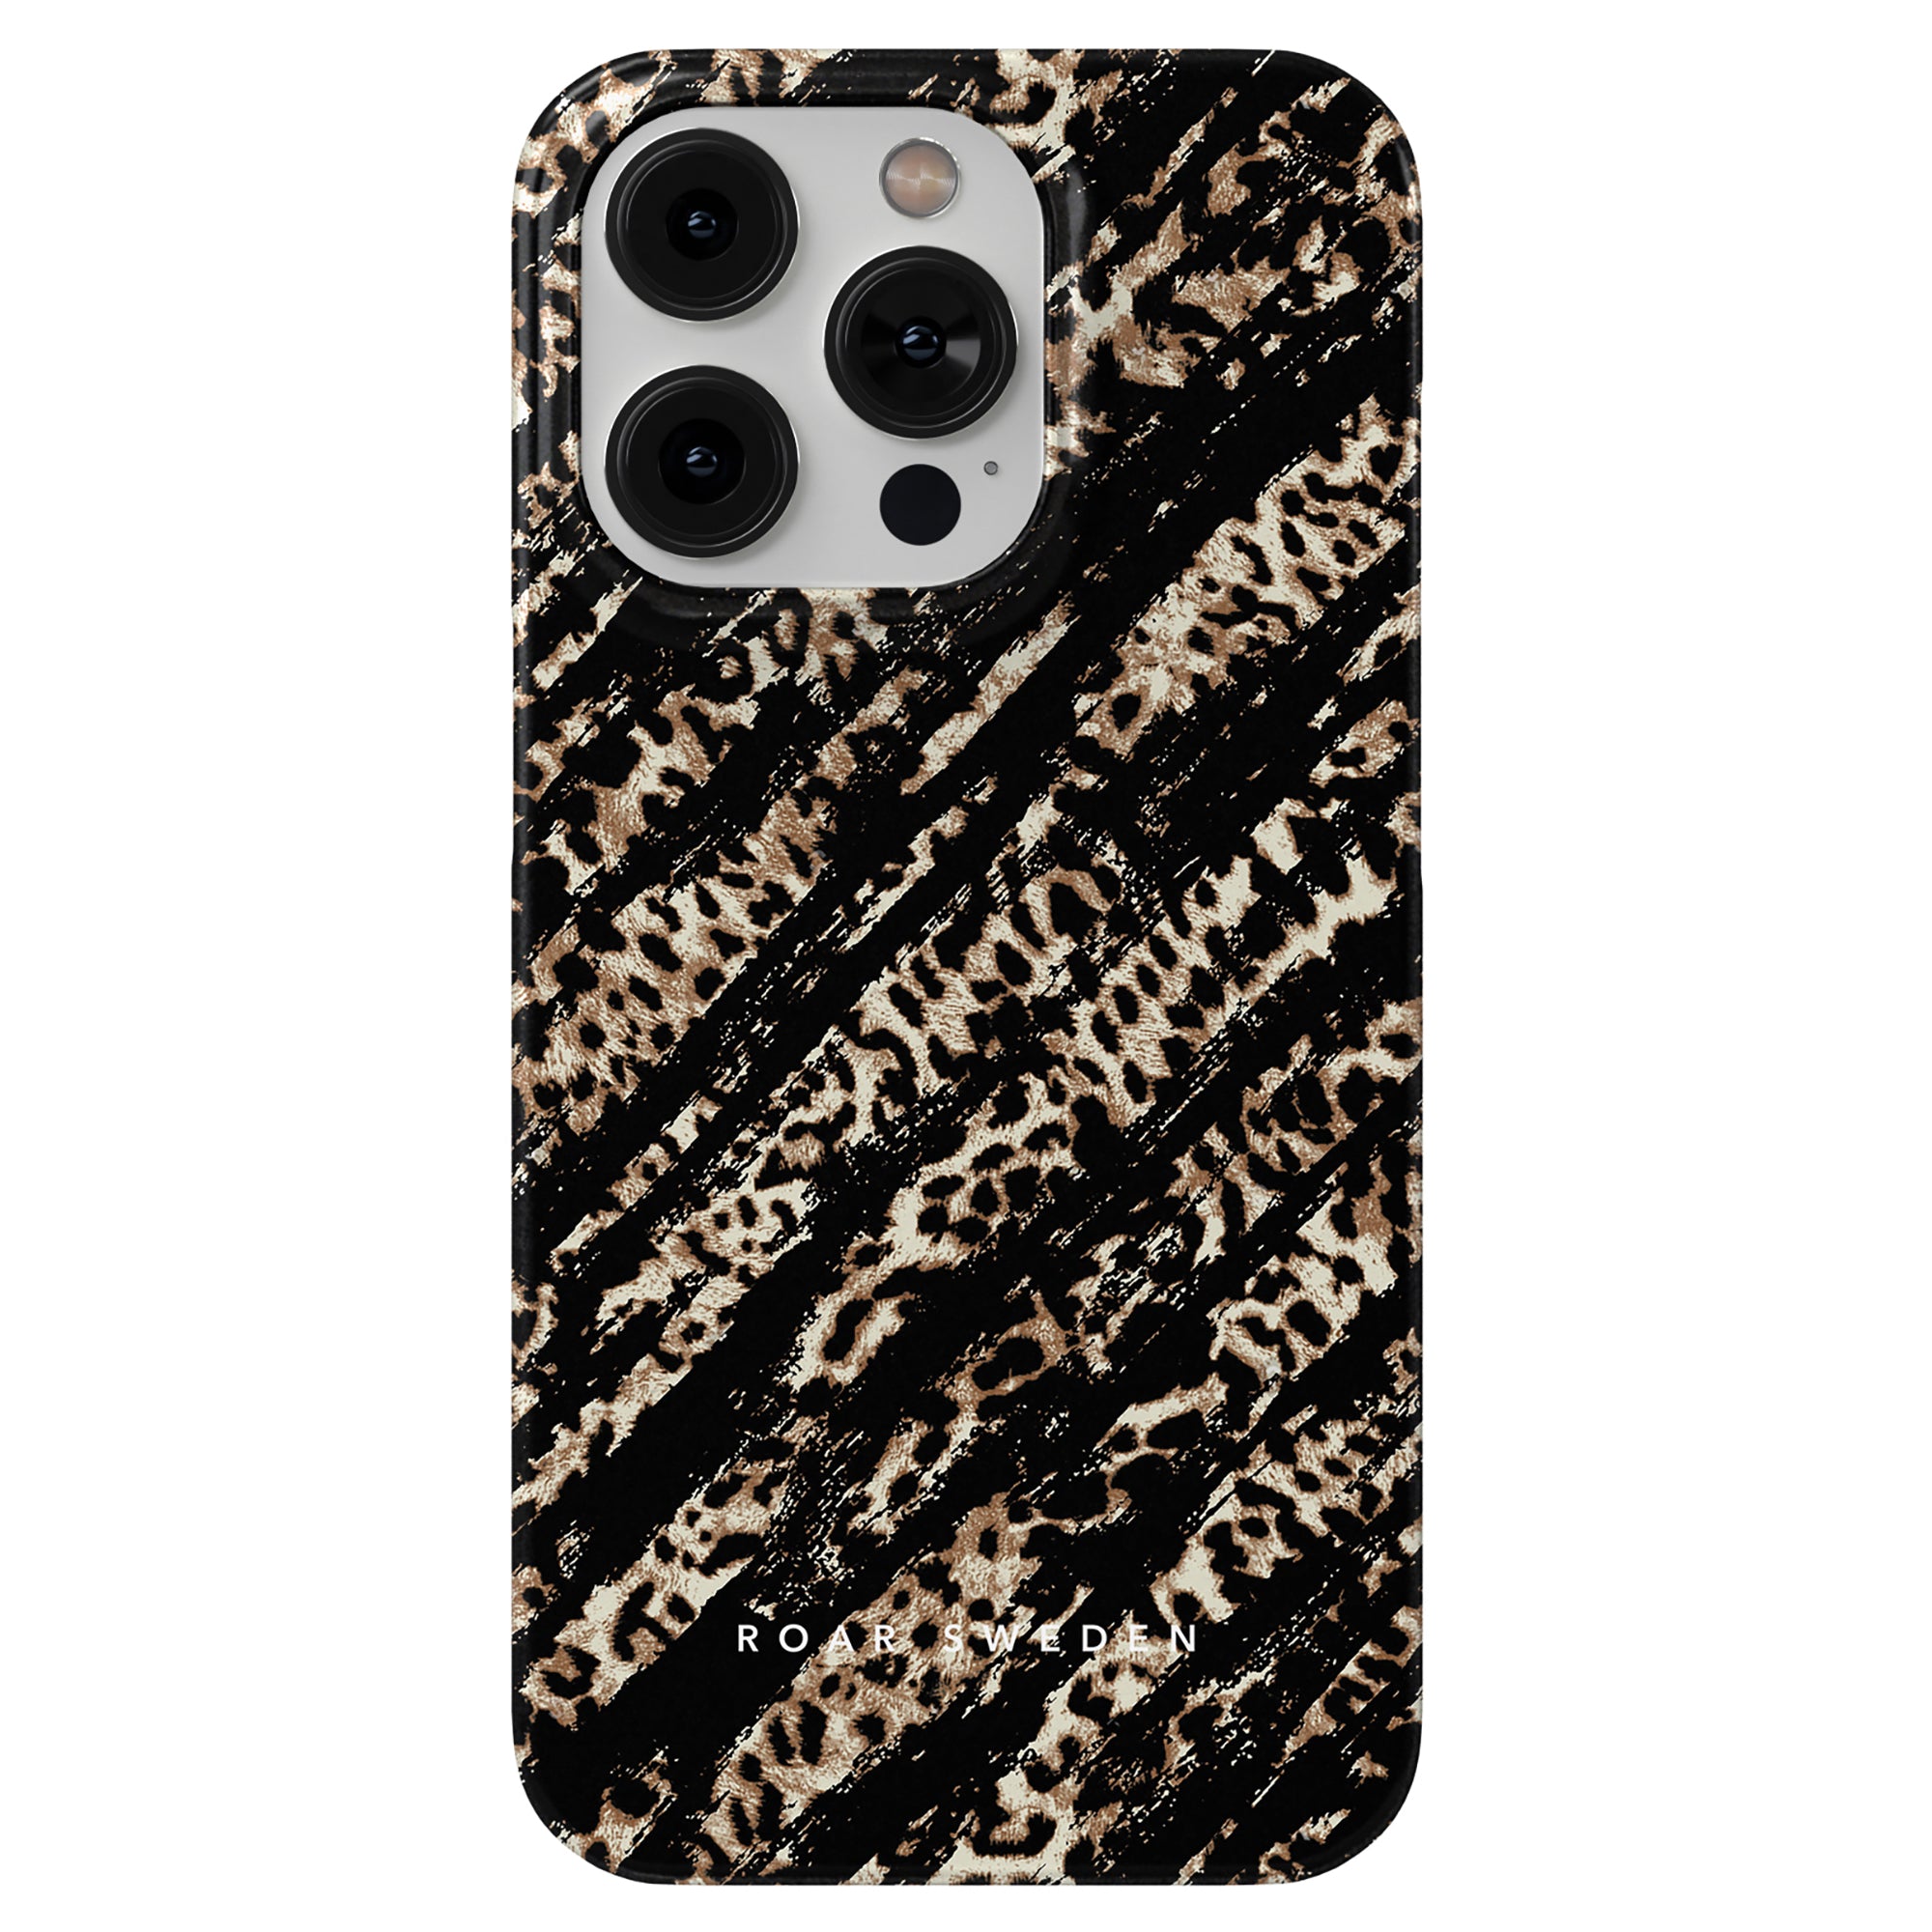 A Claws - Slim fodral för iPhone 11 Pro, ger både stil och skydd med sitt höga skyddsnivå. Perfekt för dig som älskar leopardmönster och vill ha ett trendigt.